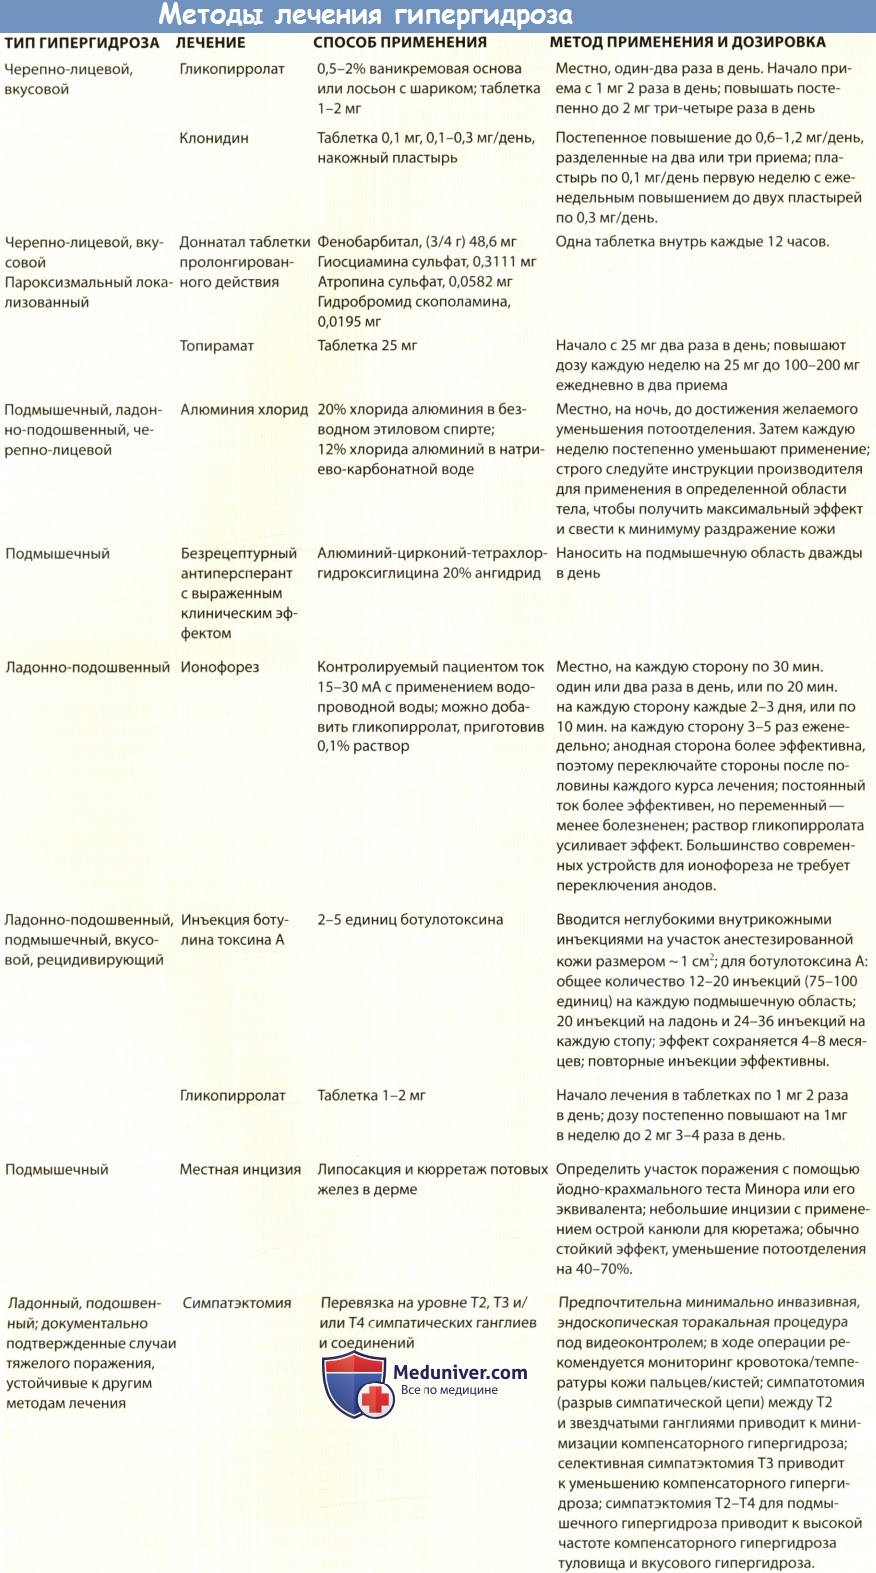 Методы лечения гипергидроза